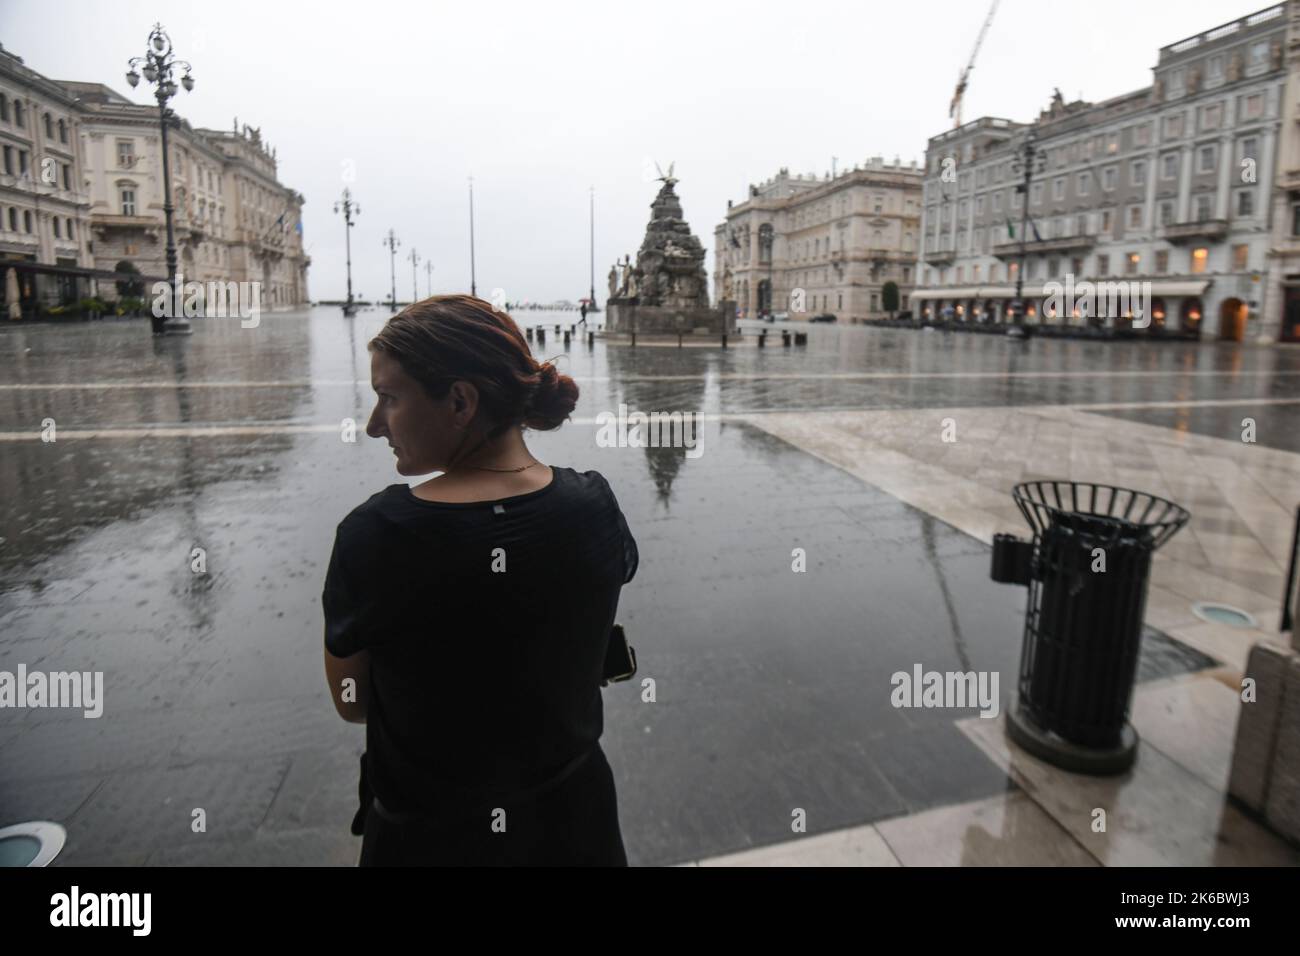 Après-midi pluvieux sur la place de l'unité d'Italie (Piazza UNITA d' Italia). Trieste, Italie Banque D'Images